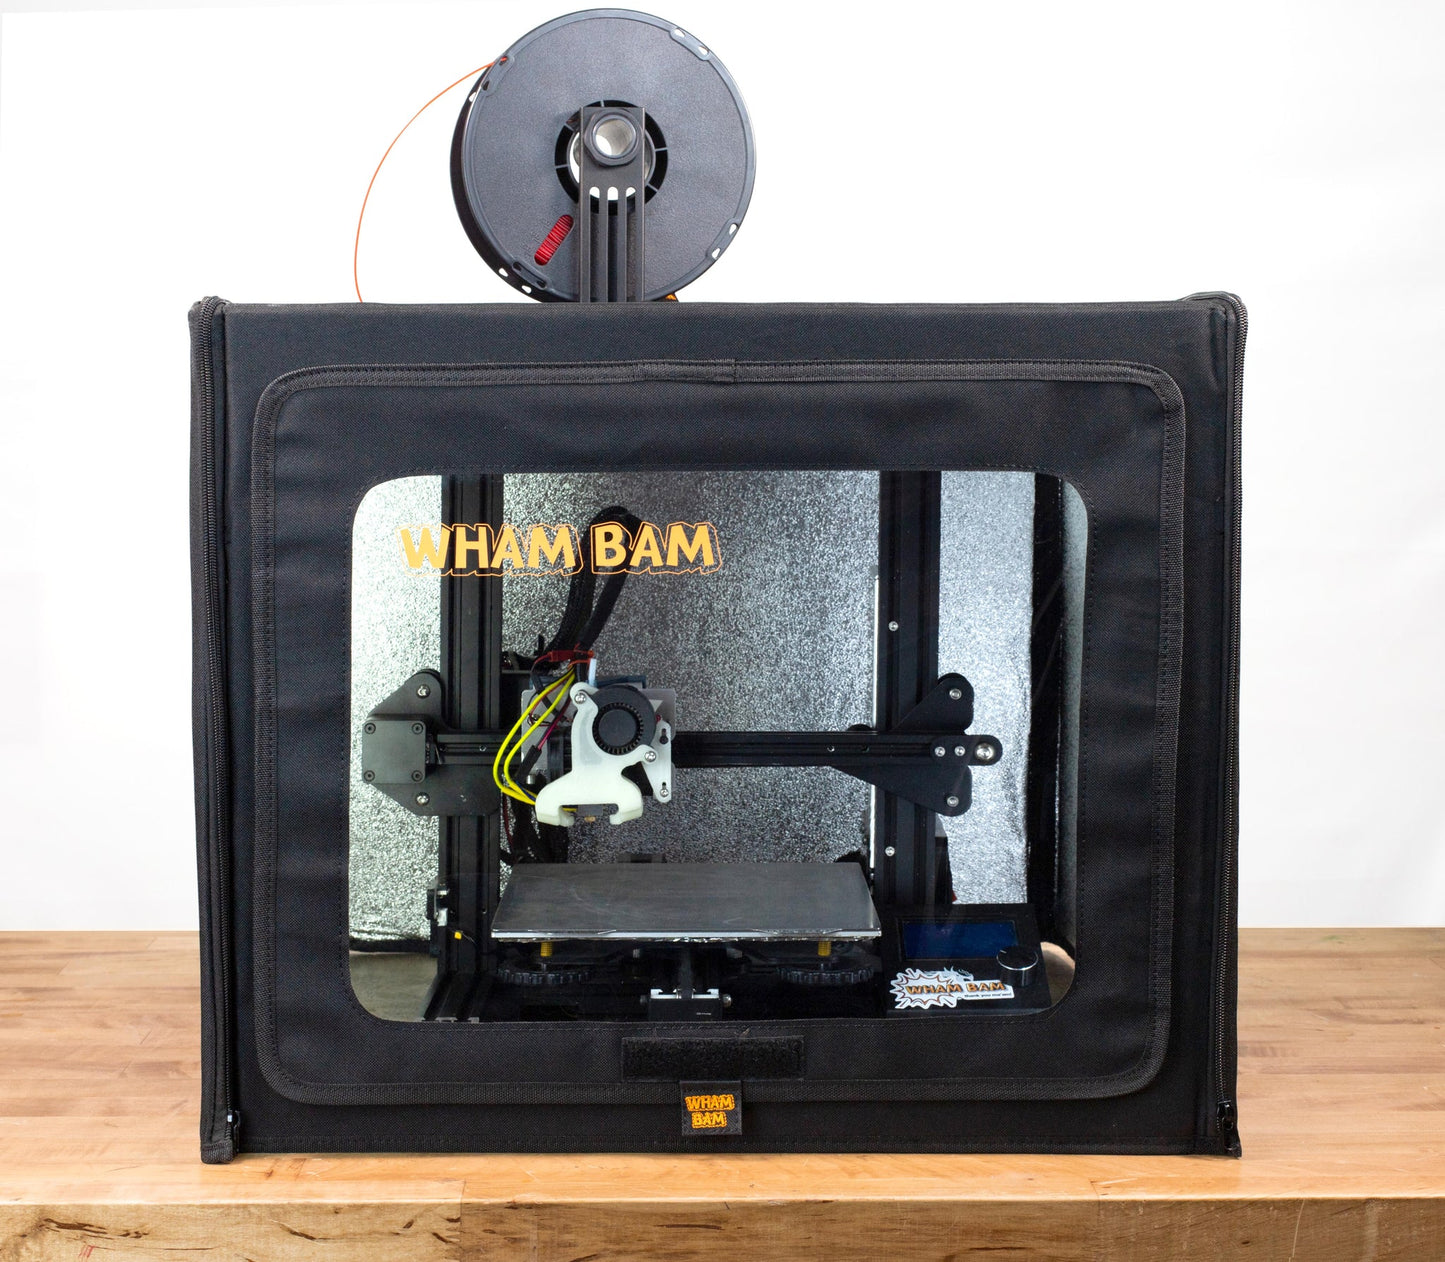 Wham Bam HotBox (V2) 3D Printer Enclosure